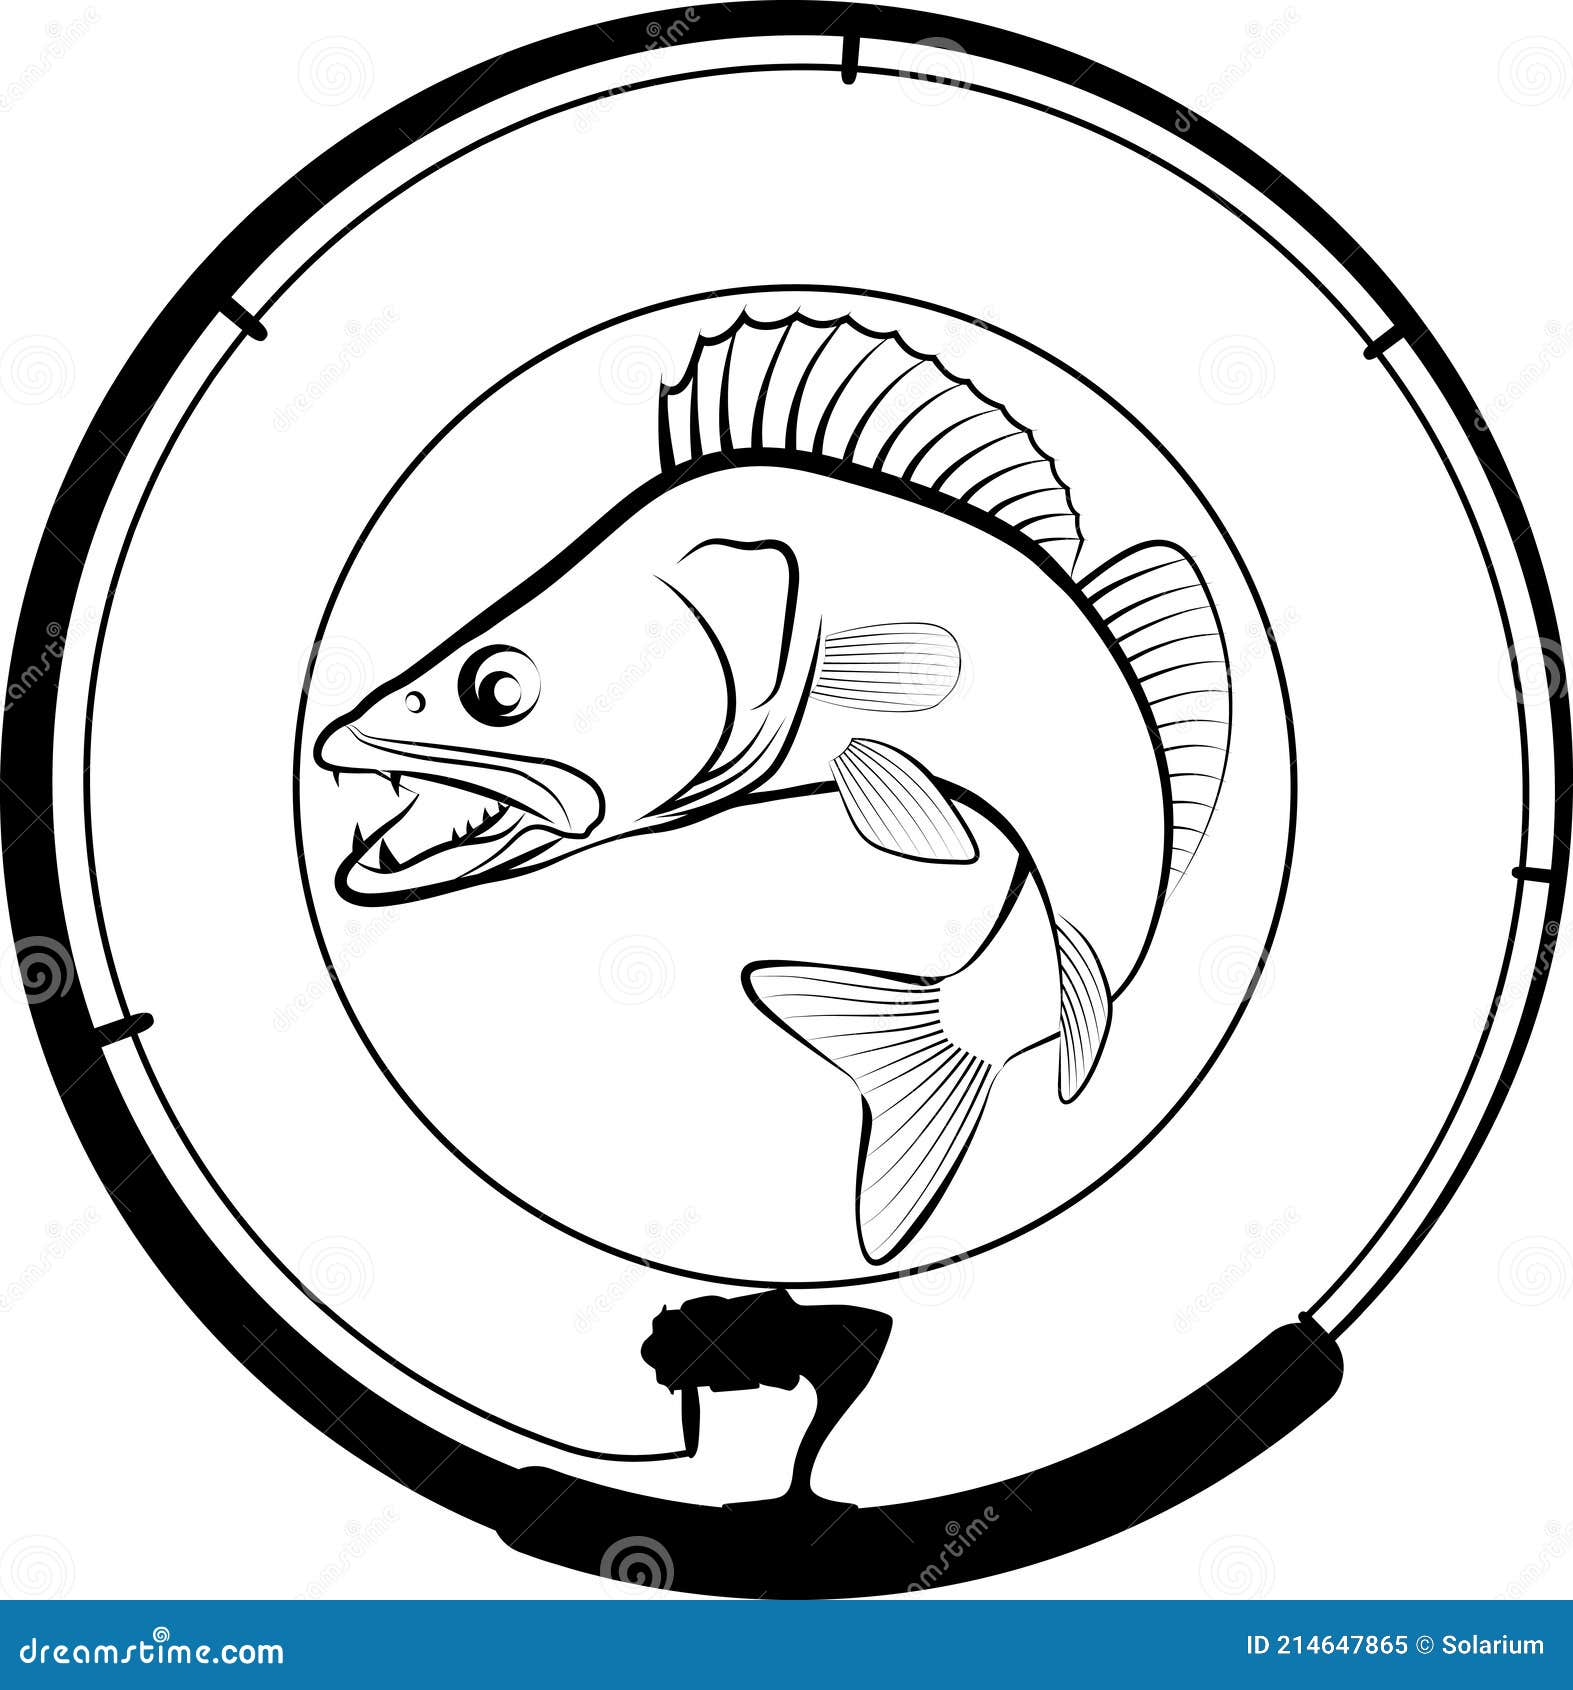 Fishing Pickerel Stock Illustrations – 62 Fishing Pickerel Stock  Illustrations, Vectors & Clipart - Dreamstime